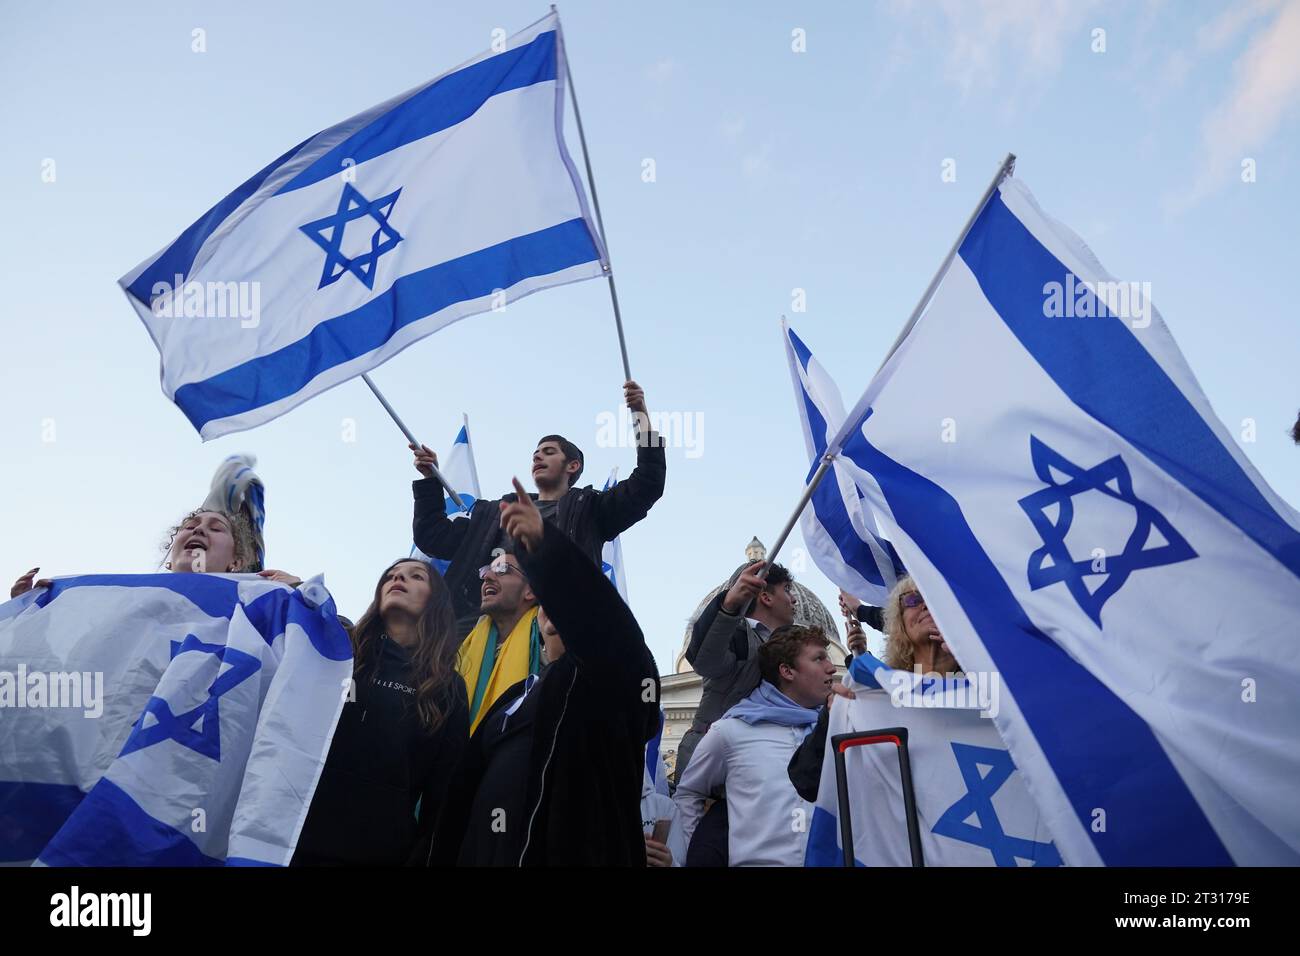 Mitglieder der jüdischen Gemeinde nehmen an einer Solidaritätskundgebung auf dem Trafalgar Square im Zentrum von London Teil, wo sie zur sicheren Rückgabe von Geiseln aufrufen und die Auswirkungen der Hamas-Angriffe auf Israel hervorheben. Bilddatum: Sonntag, 22. Oktober 2023. Stockfoto